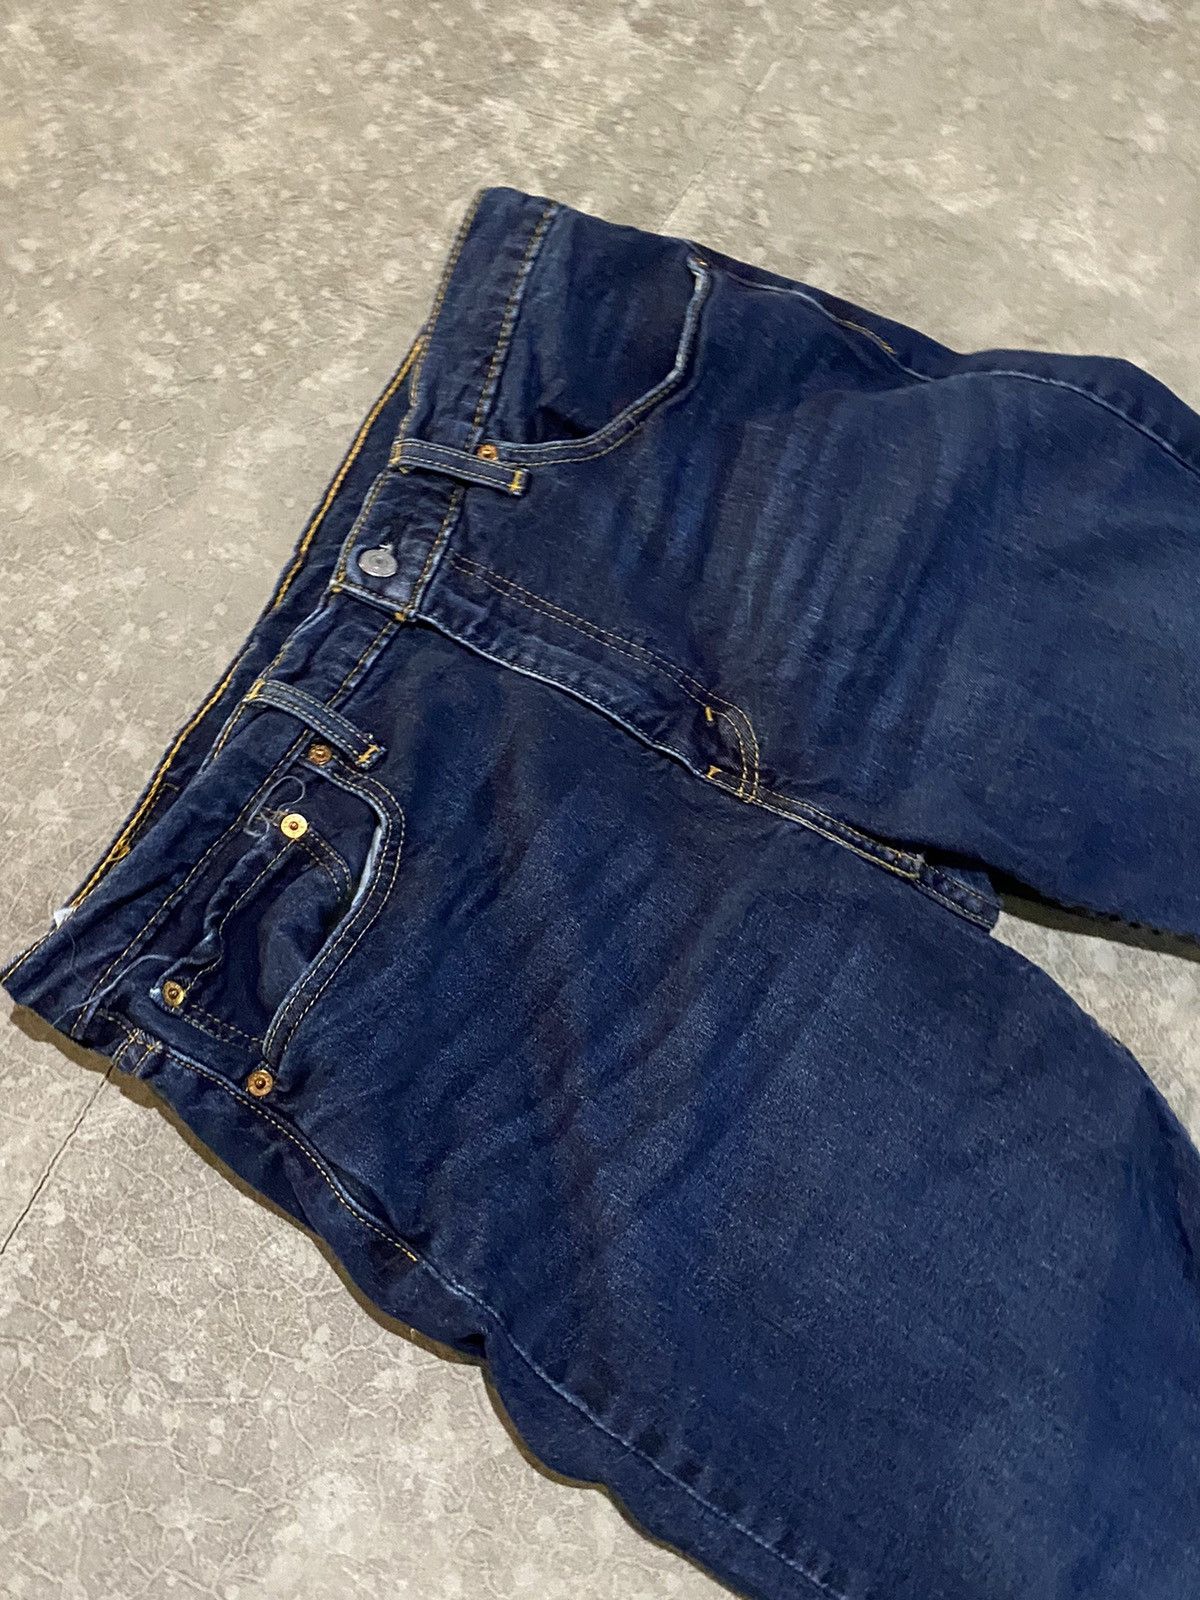 Vintage Dark Blue Levi 502 Jeans 36x32 Size US 36 / EU 52 - 2 Preview